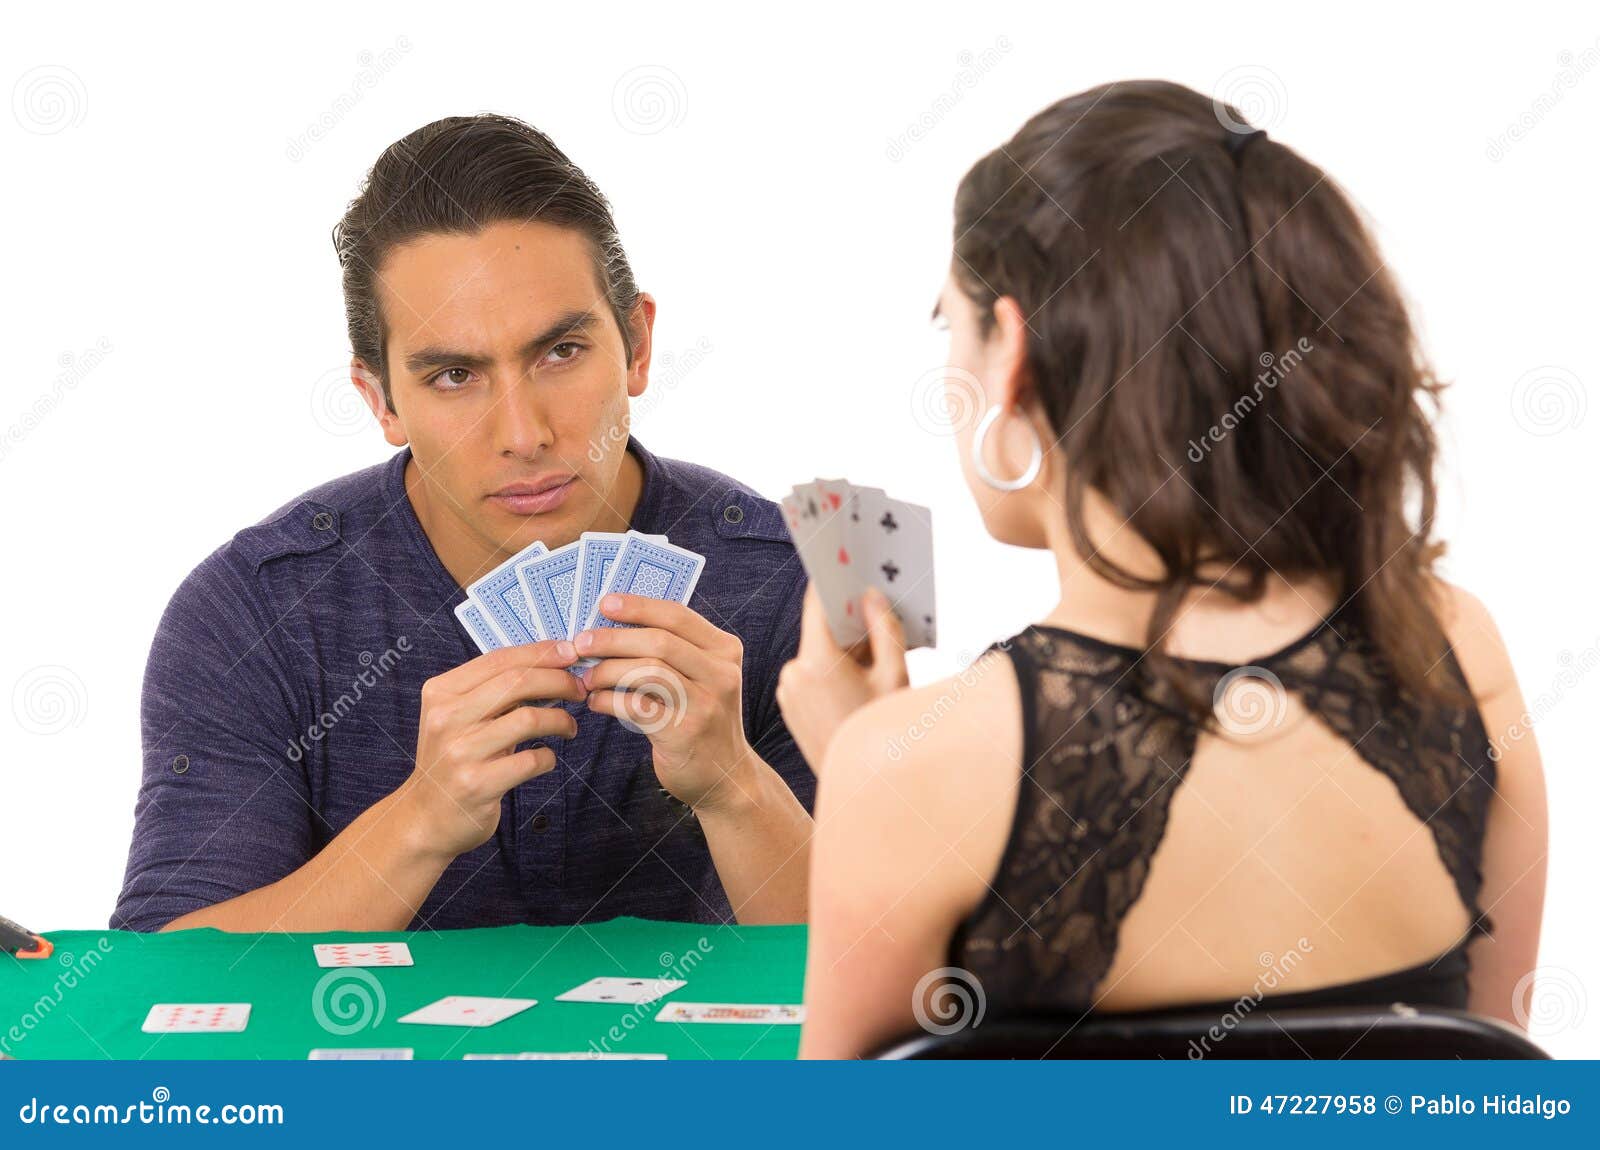 Играет в карты на жену. Люди играют в карты. Парень играет в карты. Мужчина и женщина играют в карты. Два человека играют в карты.